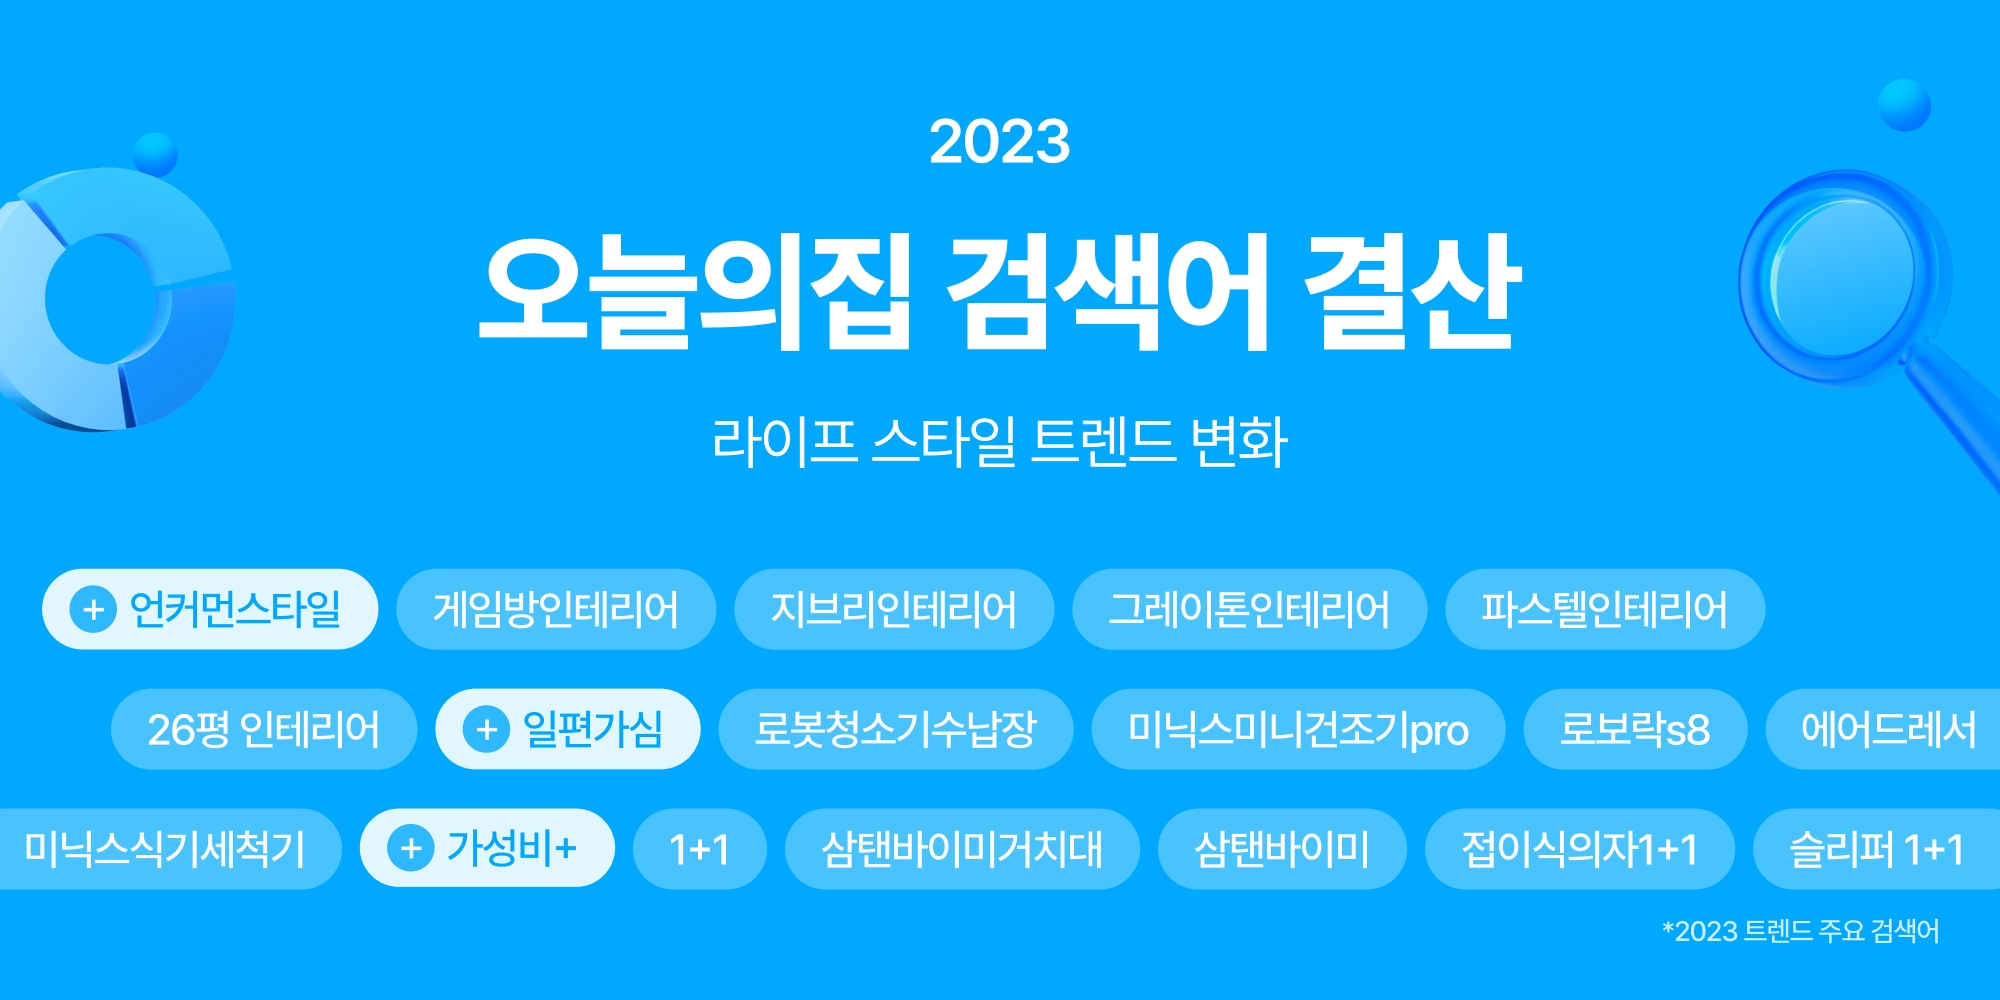 '오늘의집 2023 검색어 결산' 발표